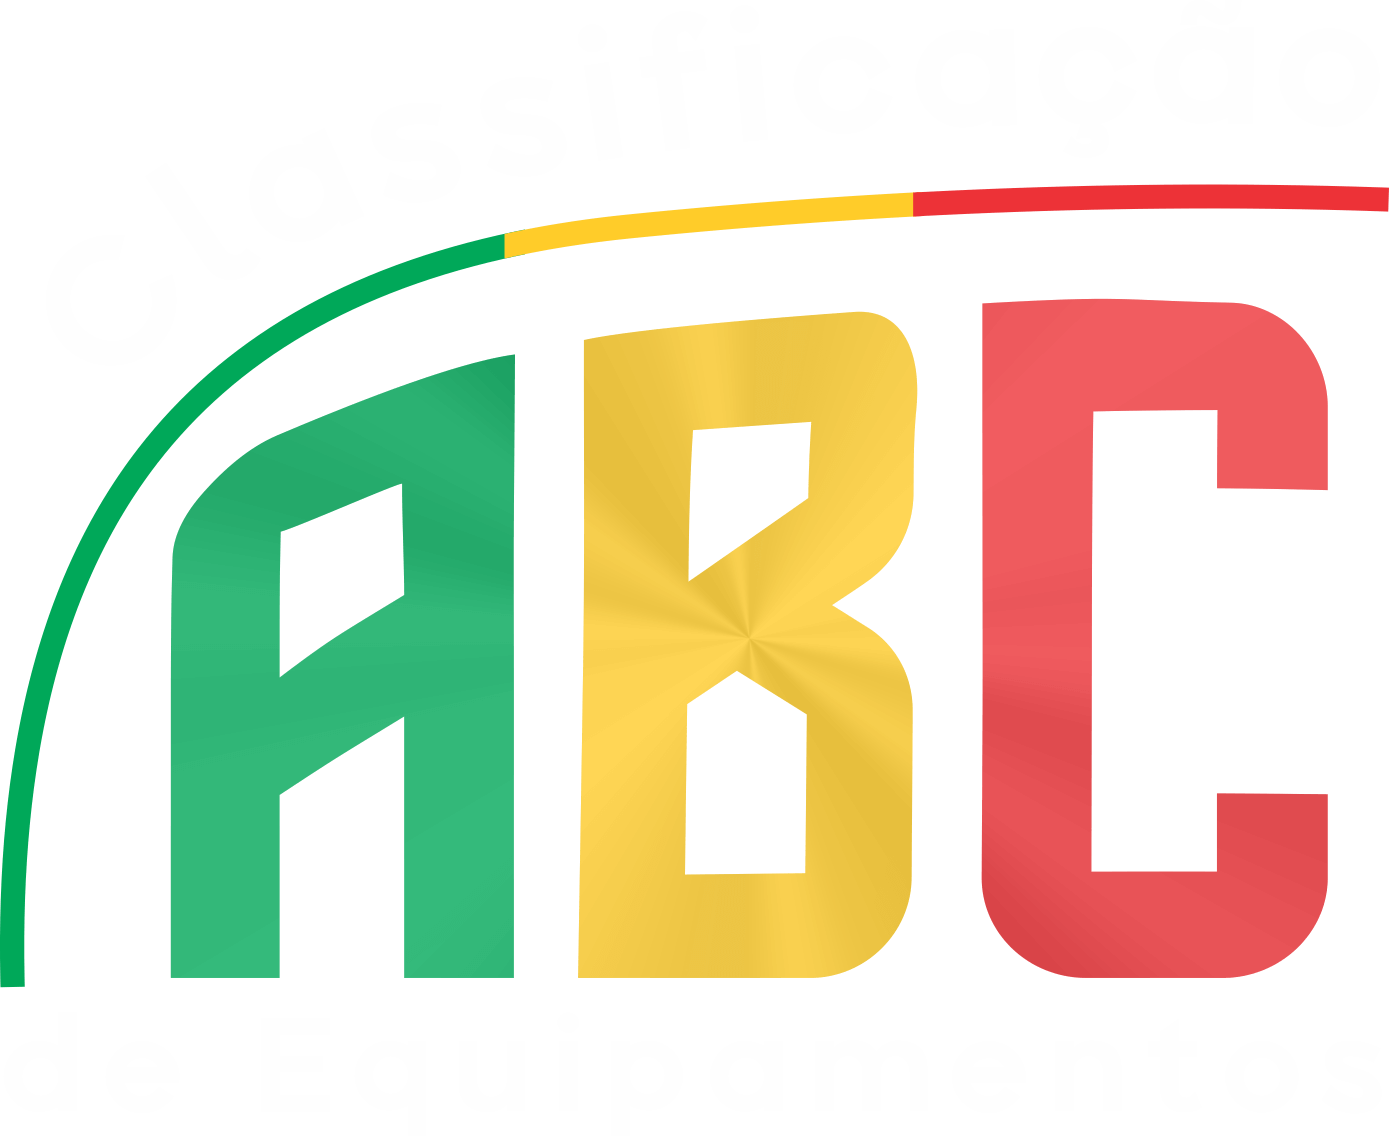 Classificação de Equipamentos ABC